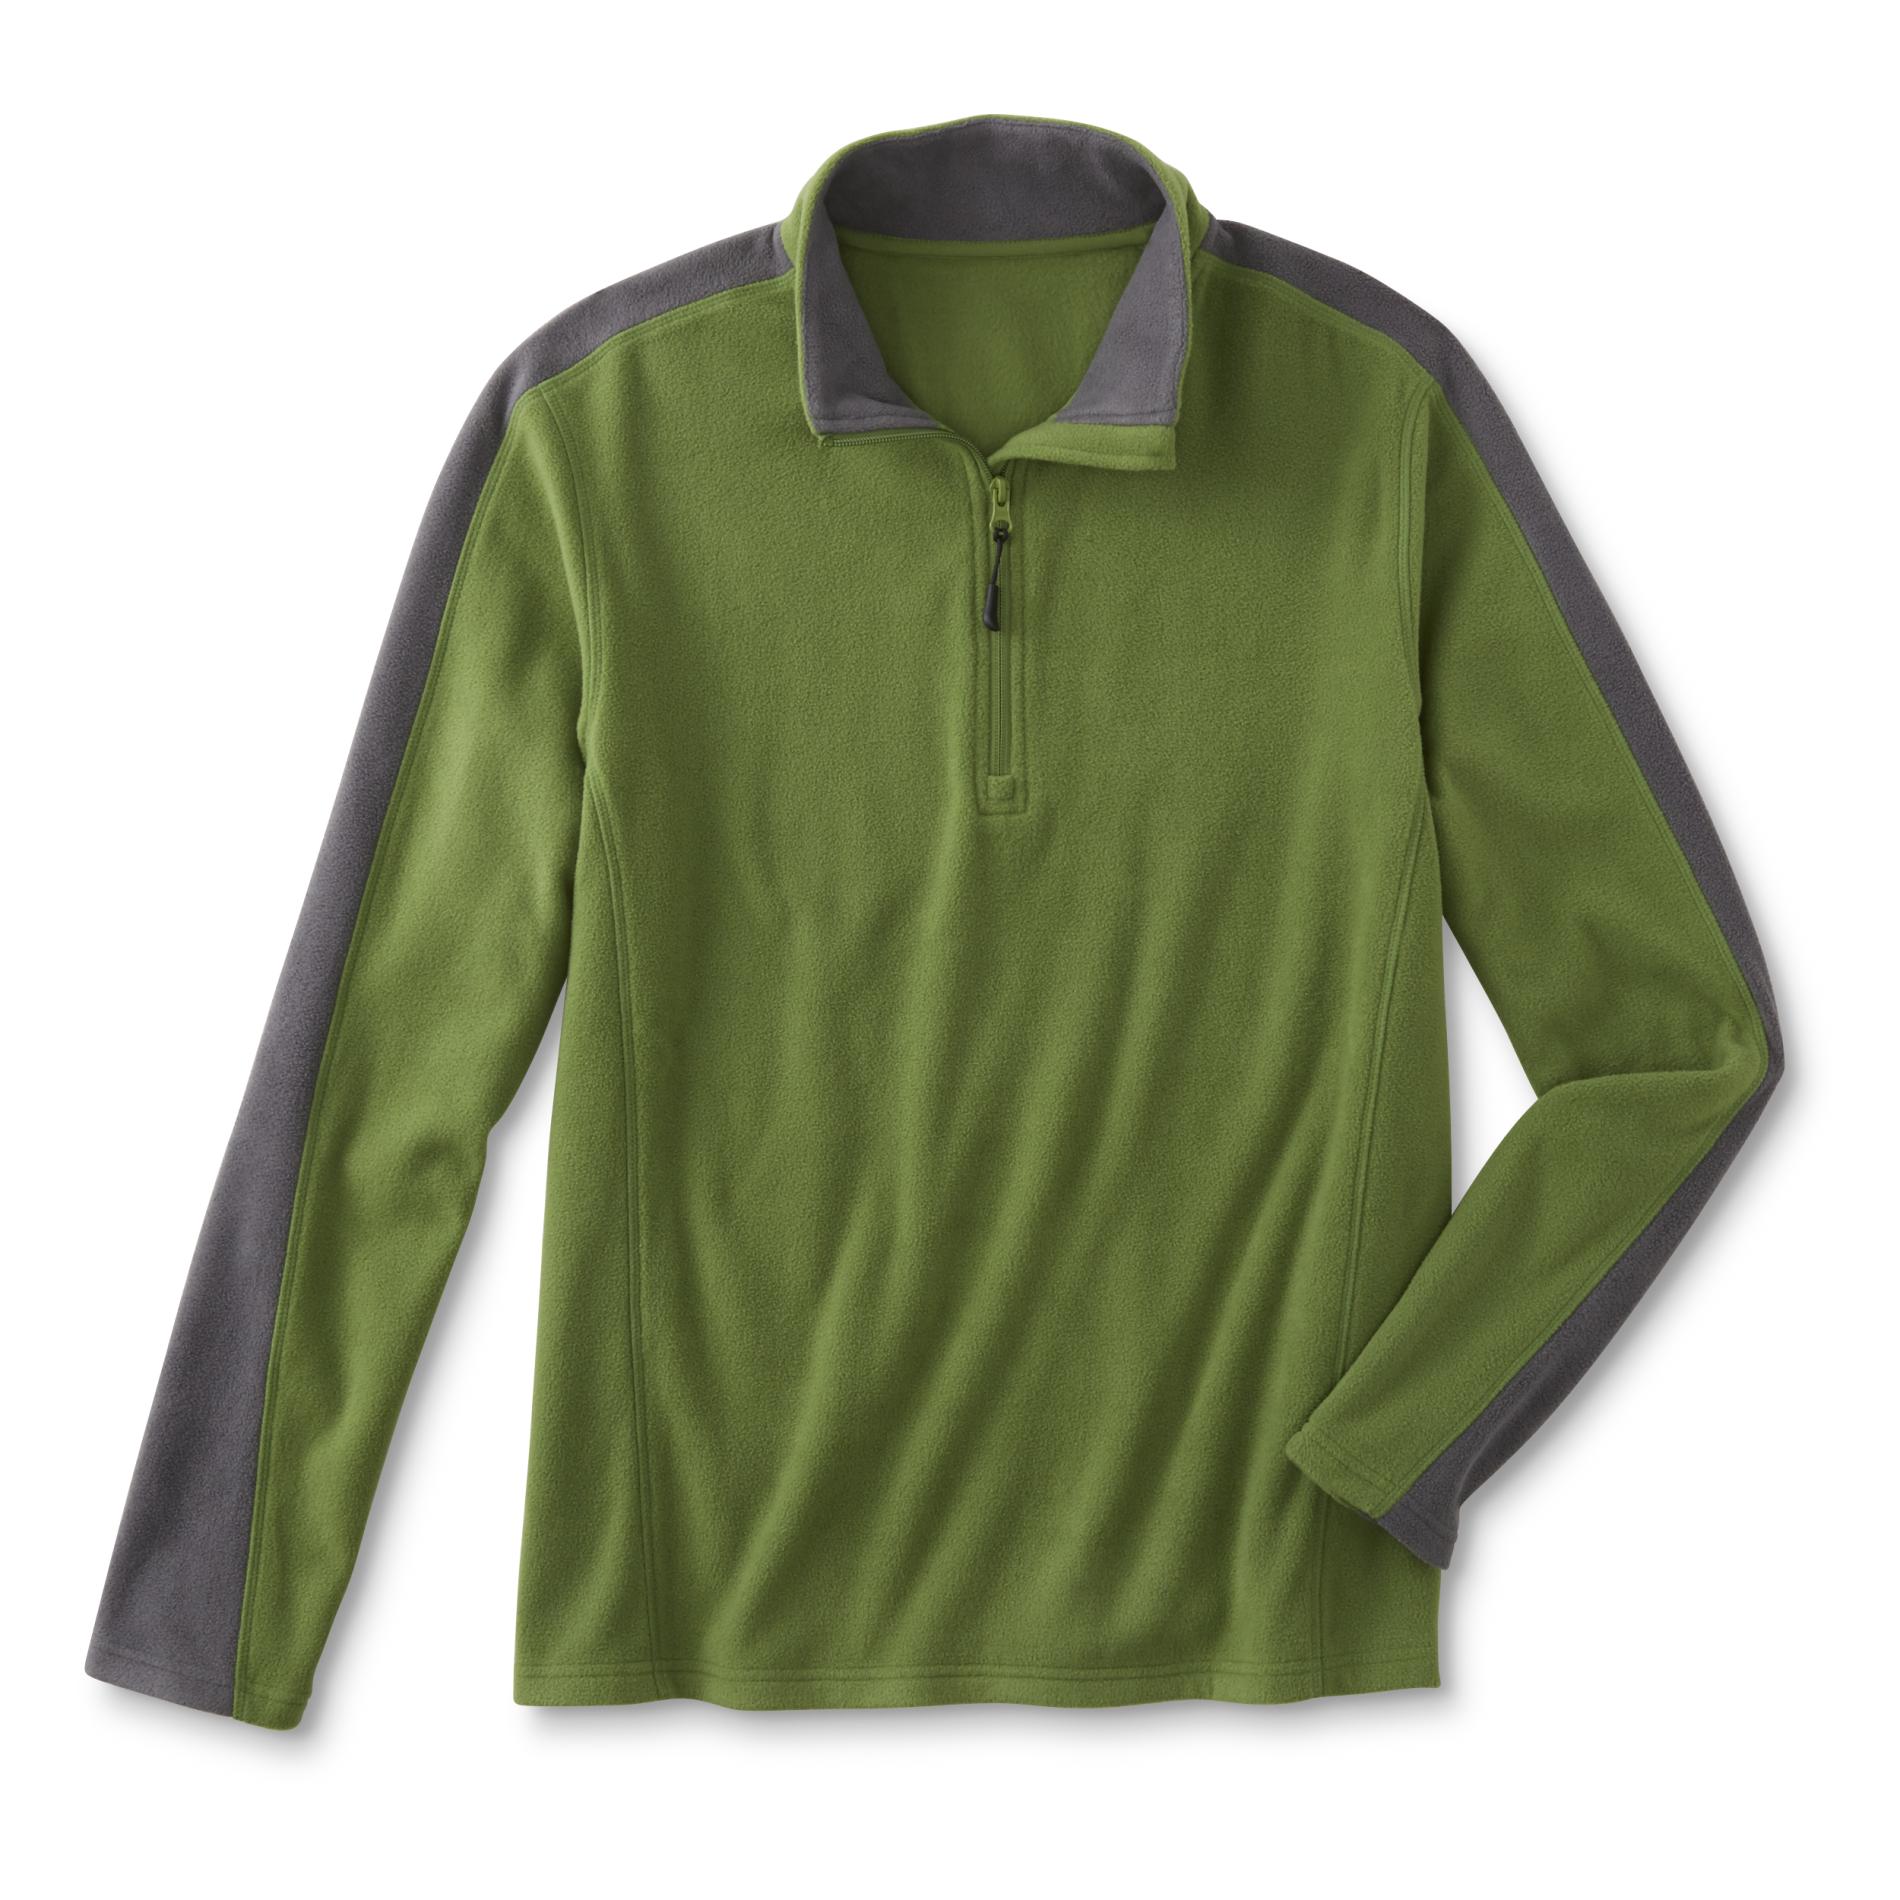 Outdoor Life Men's Quarter-Zip Sweatshirt - Colorblock